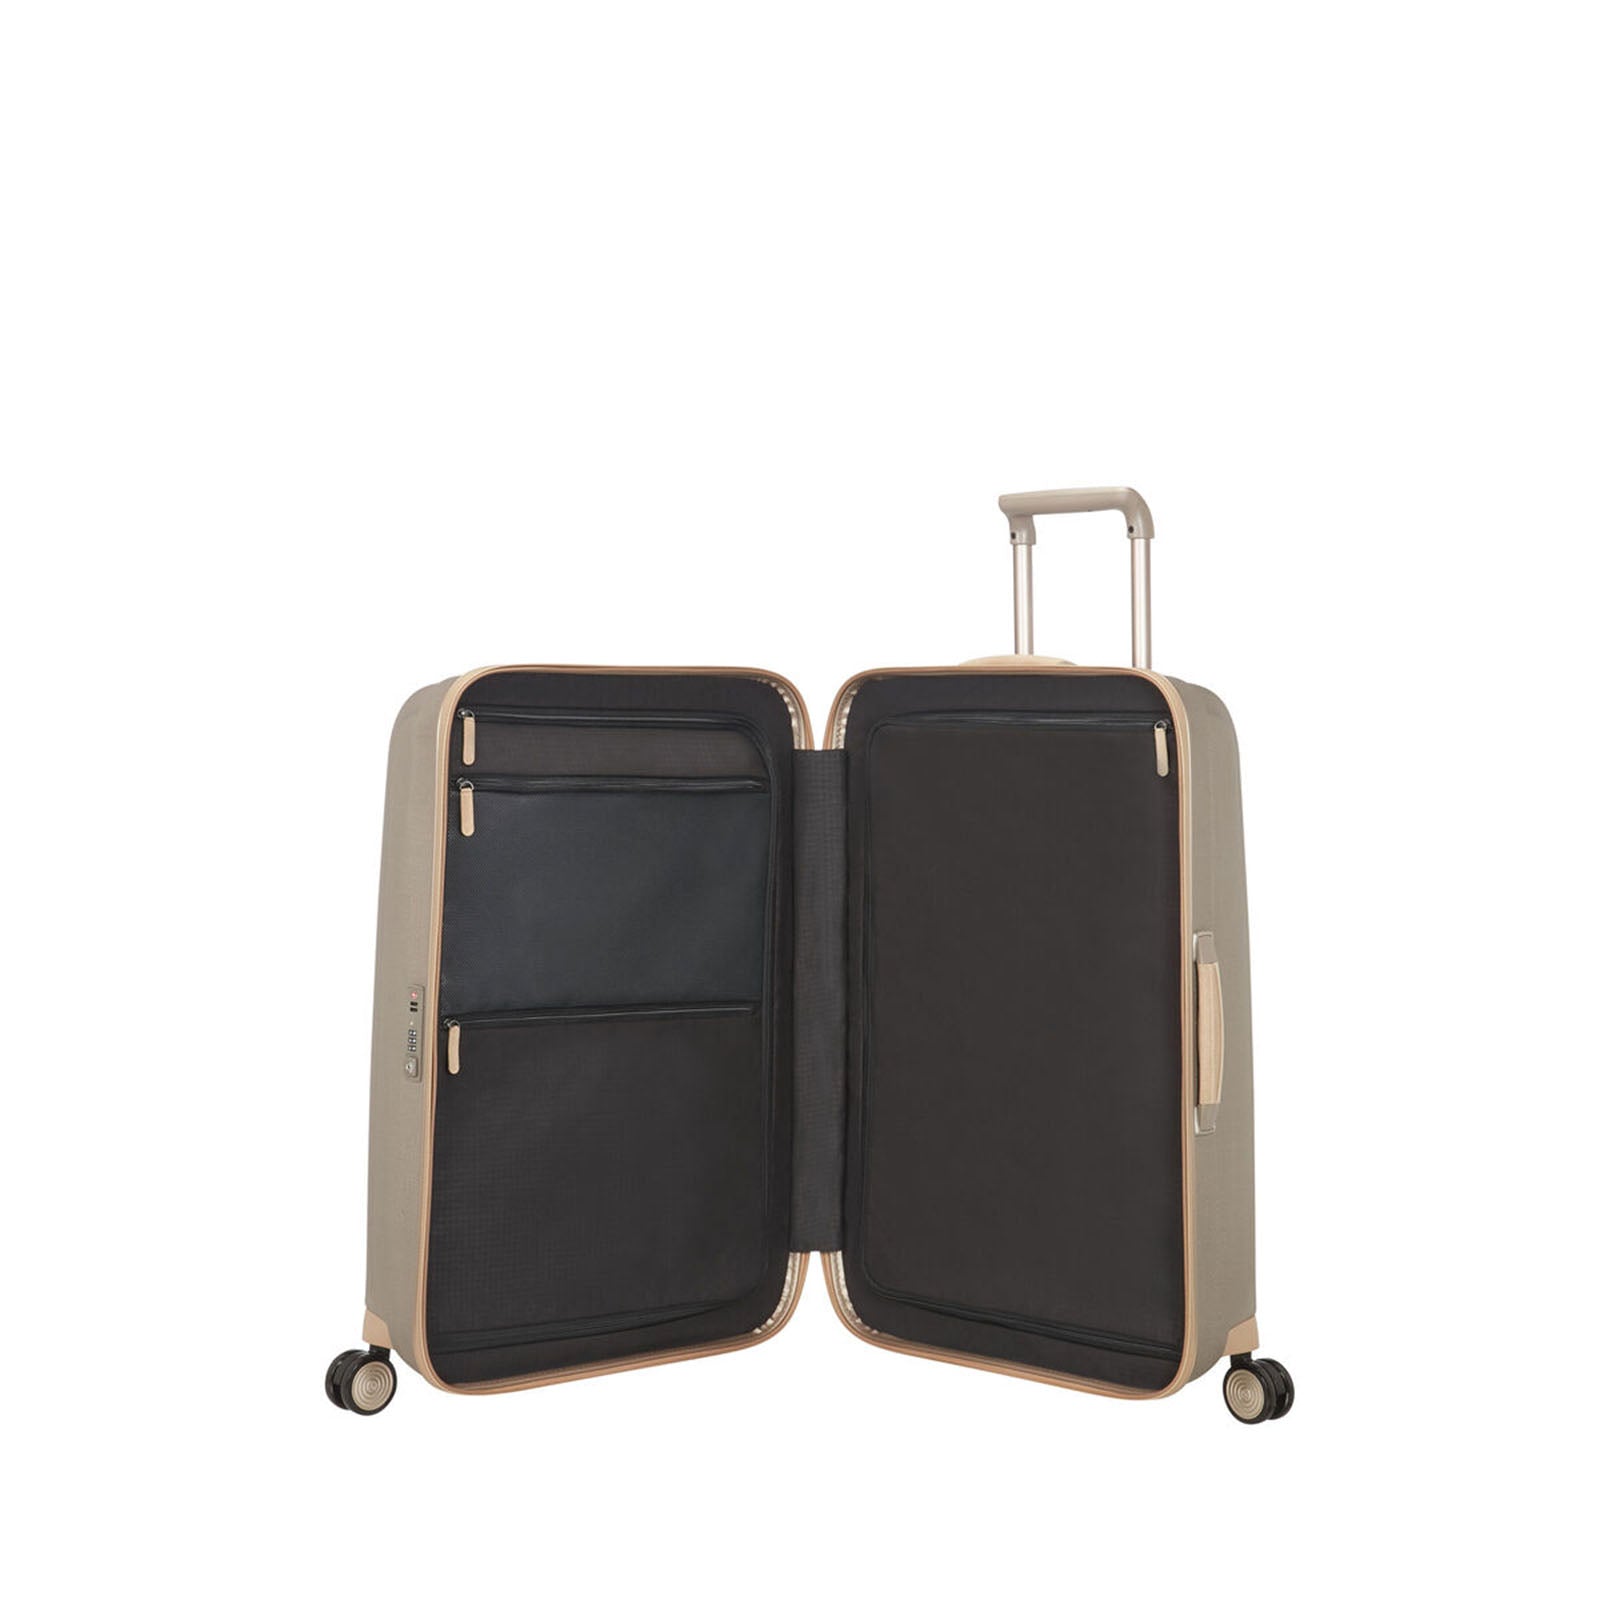 Samsonite-Lite-Cube-Prime-76cm-Suitcase-Ivory-Gold-Open